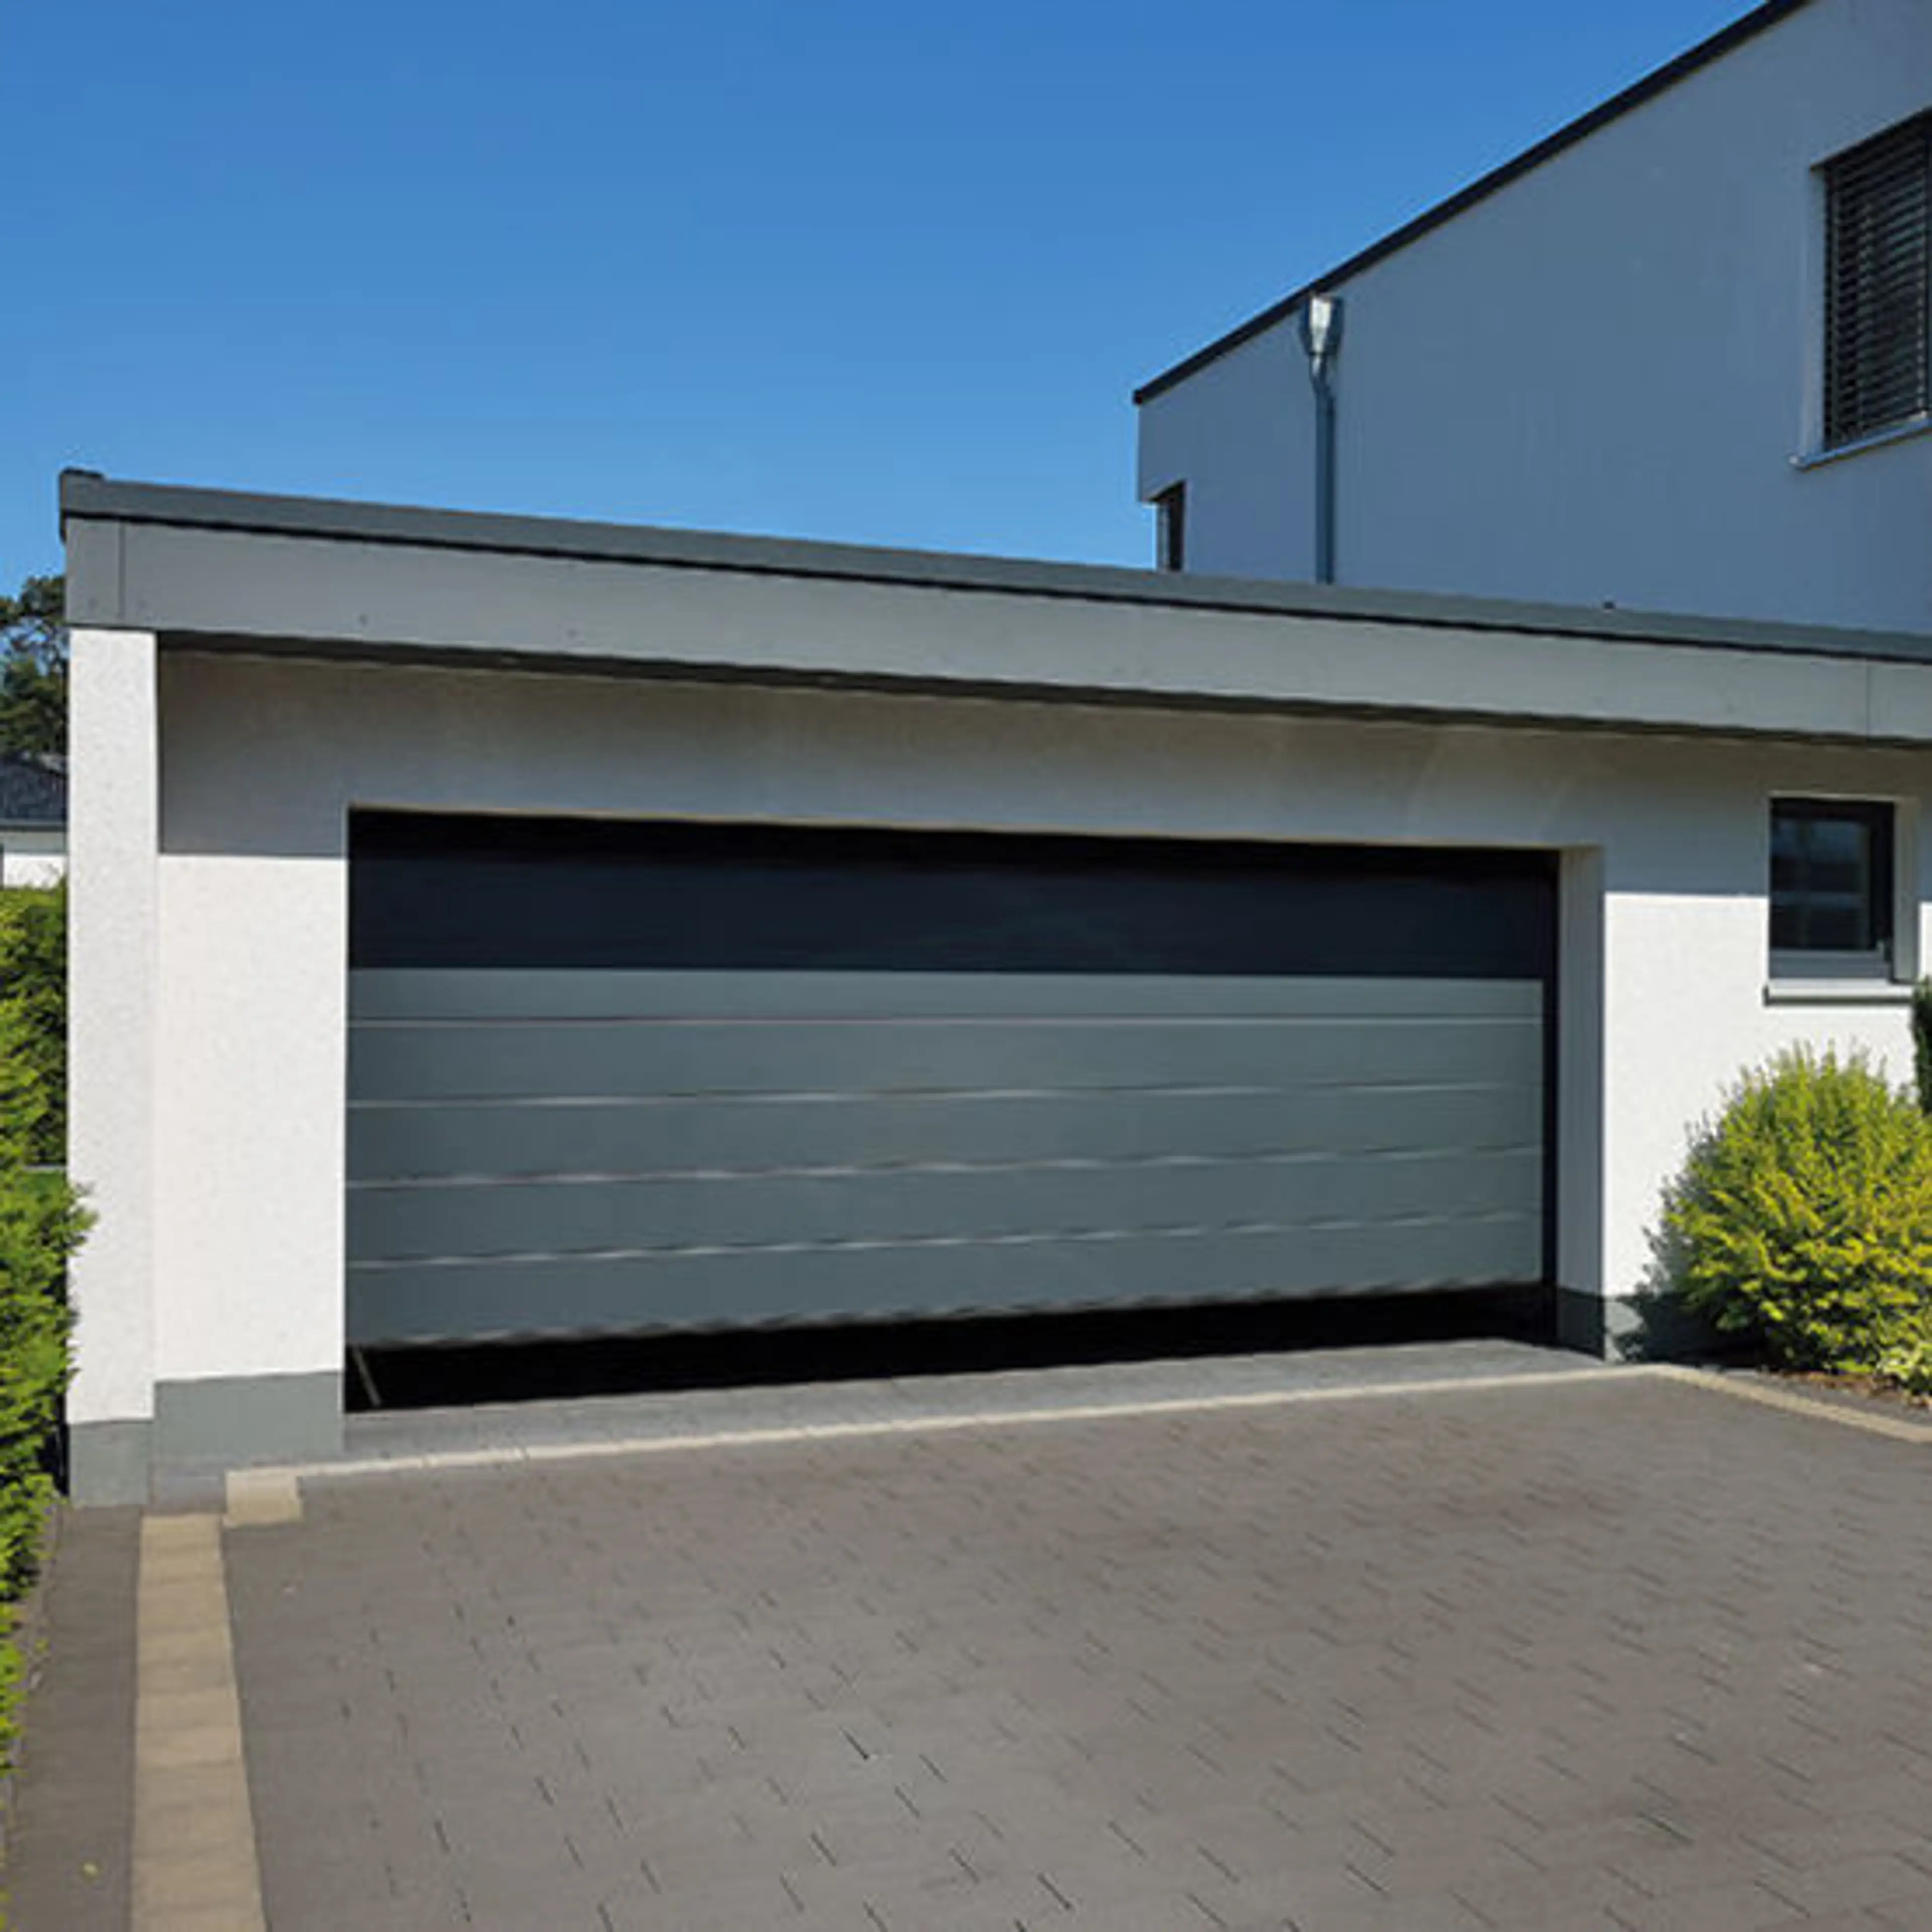 Comment choisir porte de garage enroulable sur mesure ?